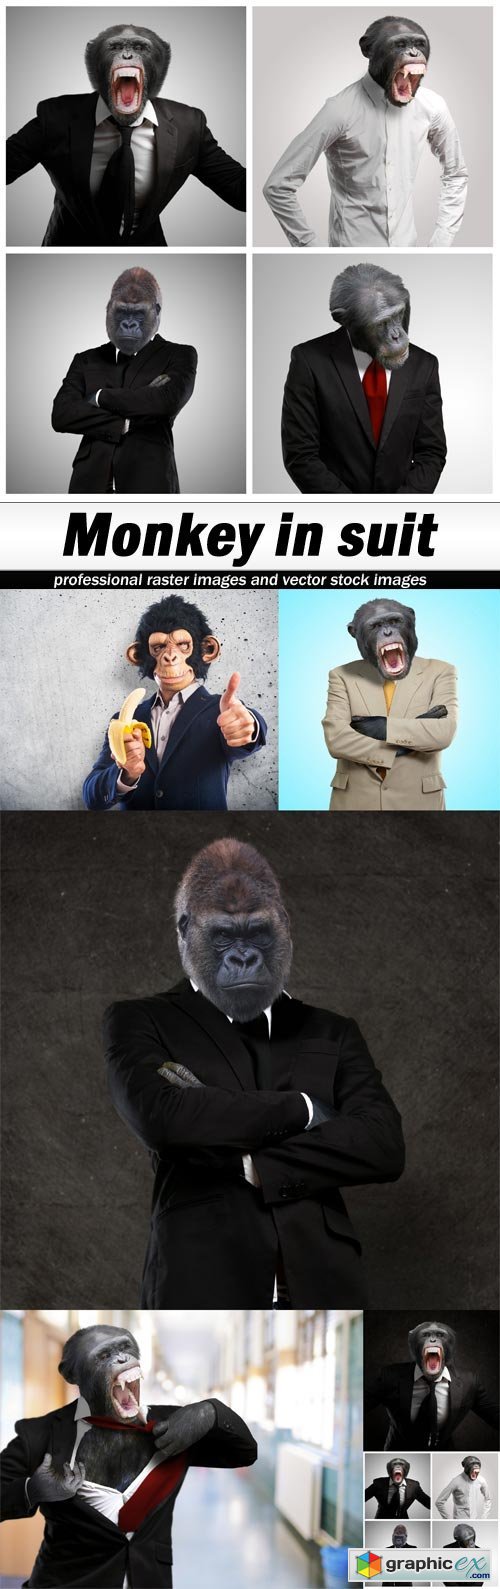  Monkey in suit